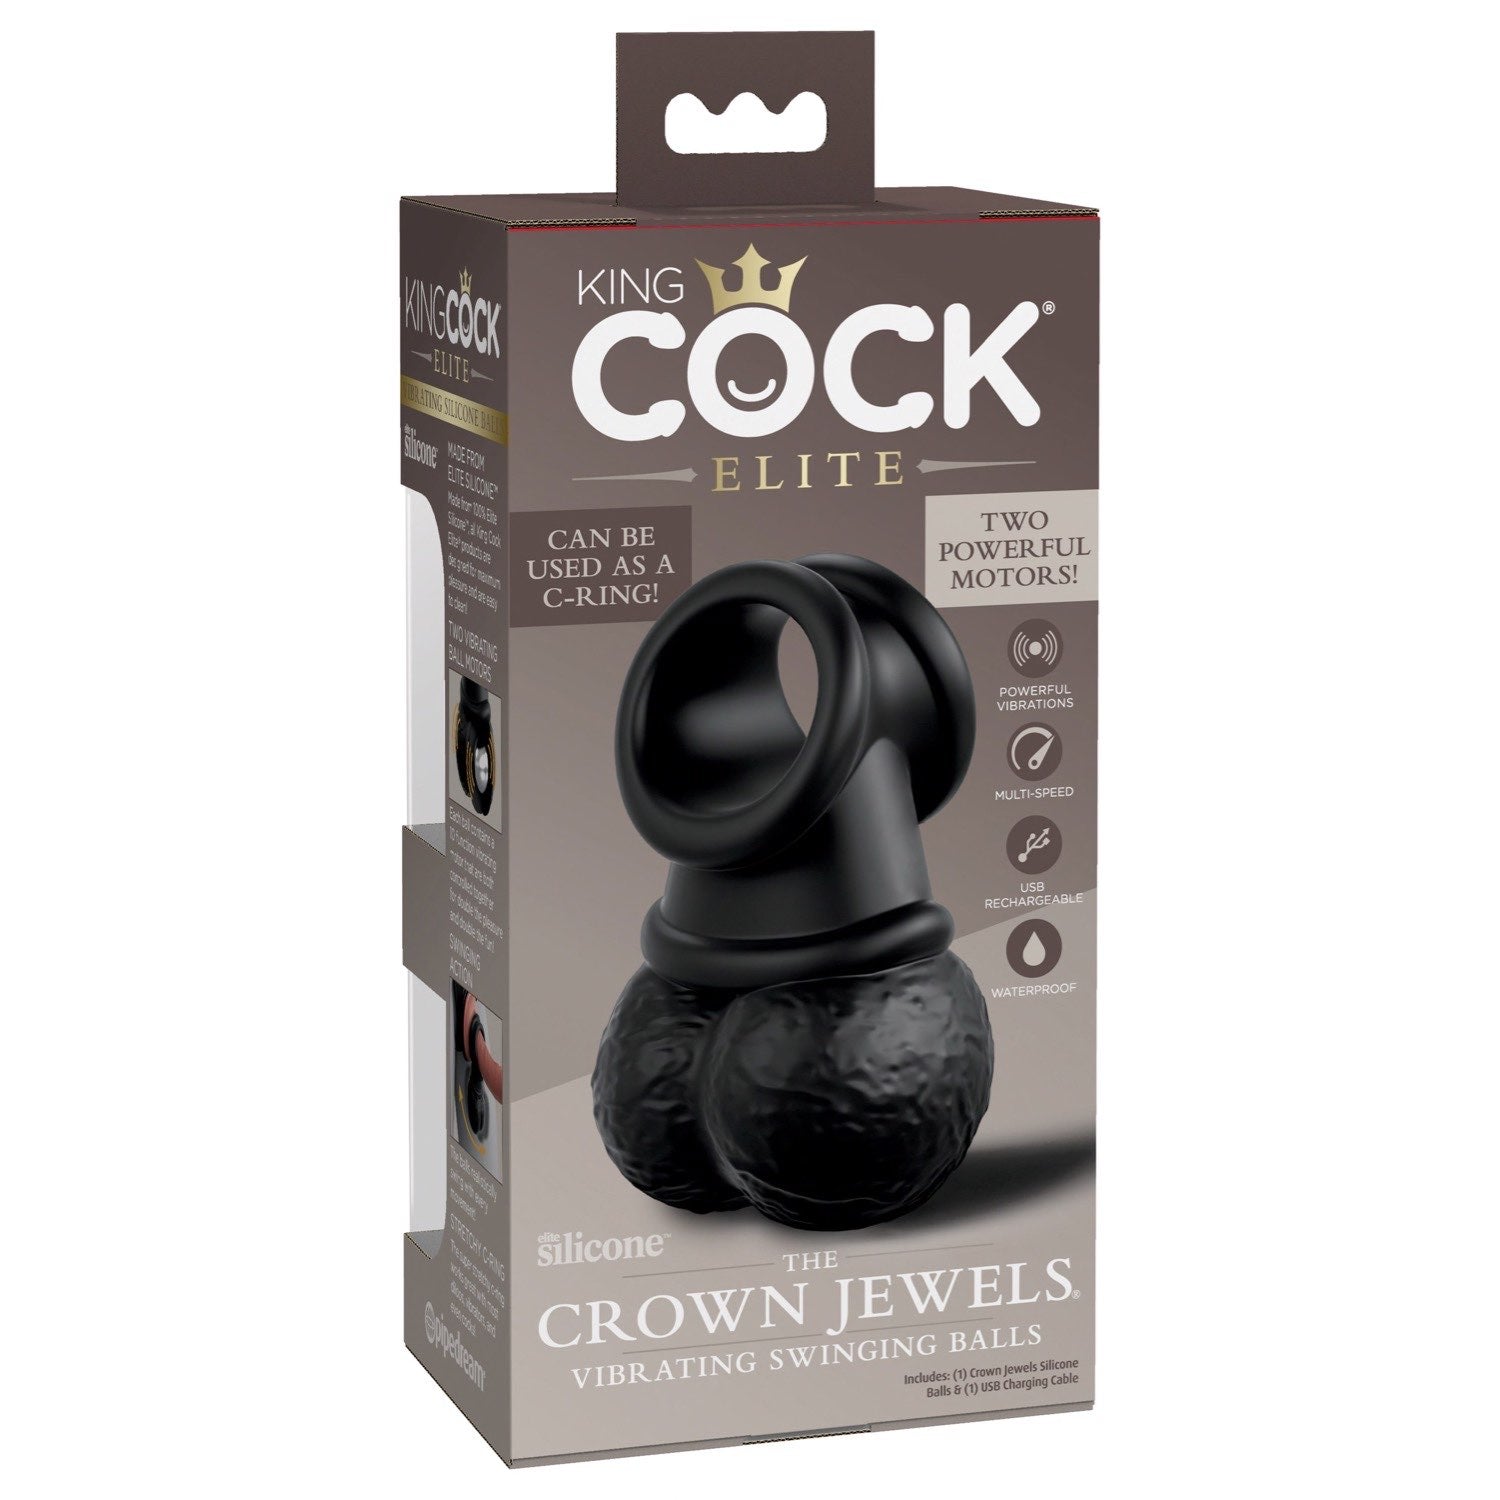 公鸡王 Elite The Crown Jewels 振动硅胶球 - 黑色 USB 可充电振动阴茎环 by Pipedream